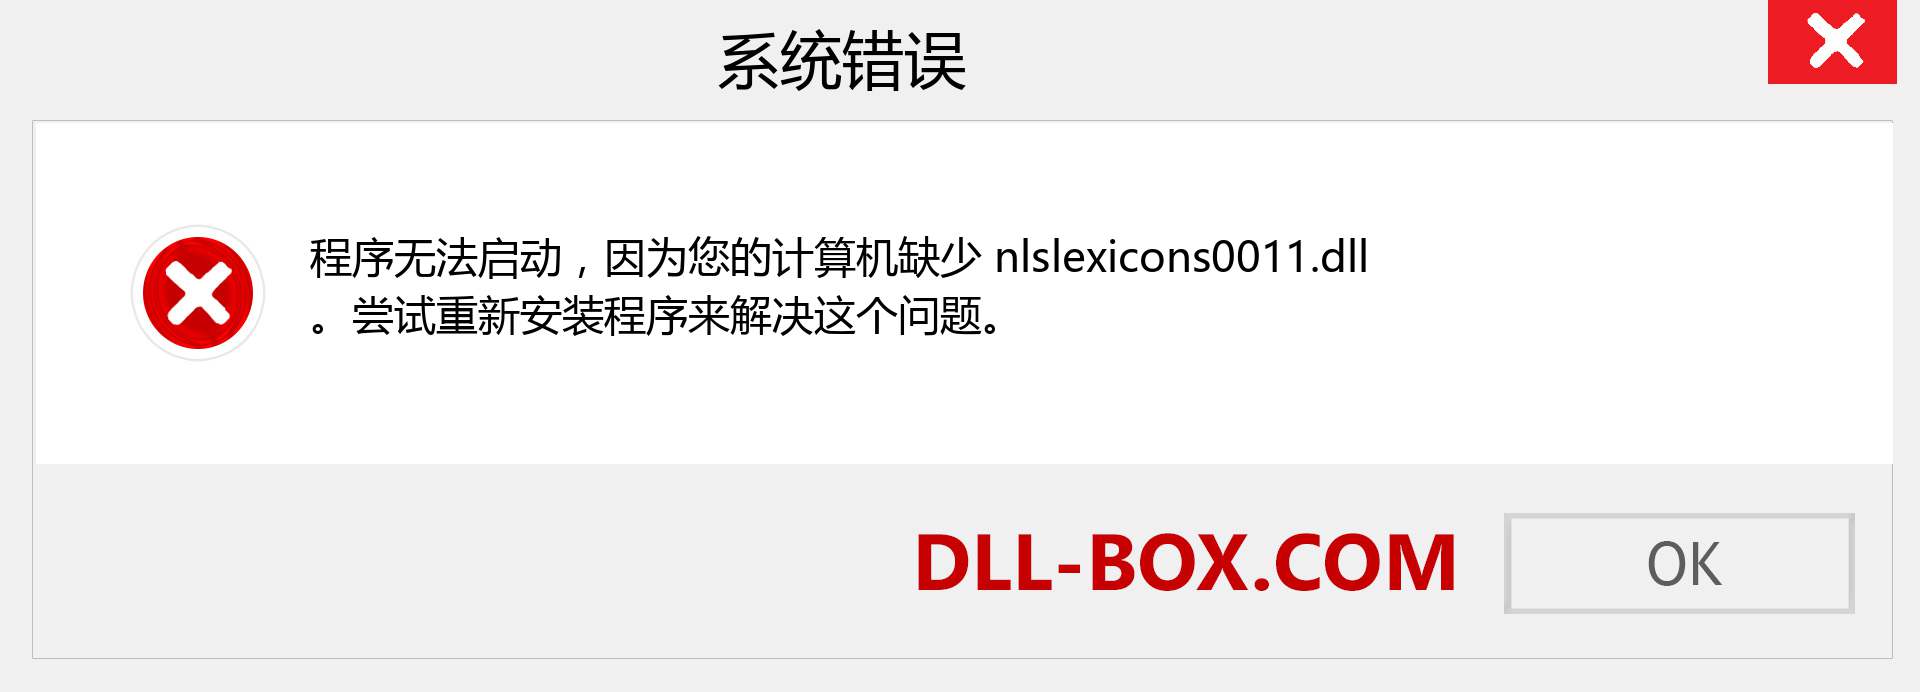 nlslexicons0011.dll 文件丢失？。 适用于 Windows 7、8、10 的下载 - 修复 Windows、照片、图像上的 nlslexicons0011 dll 丢失错误